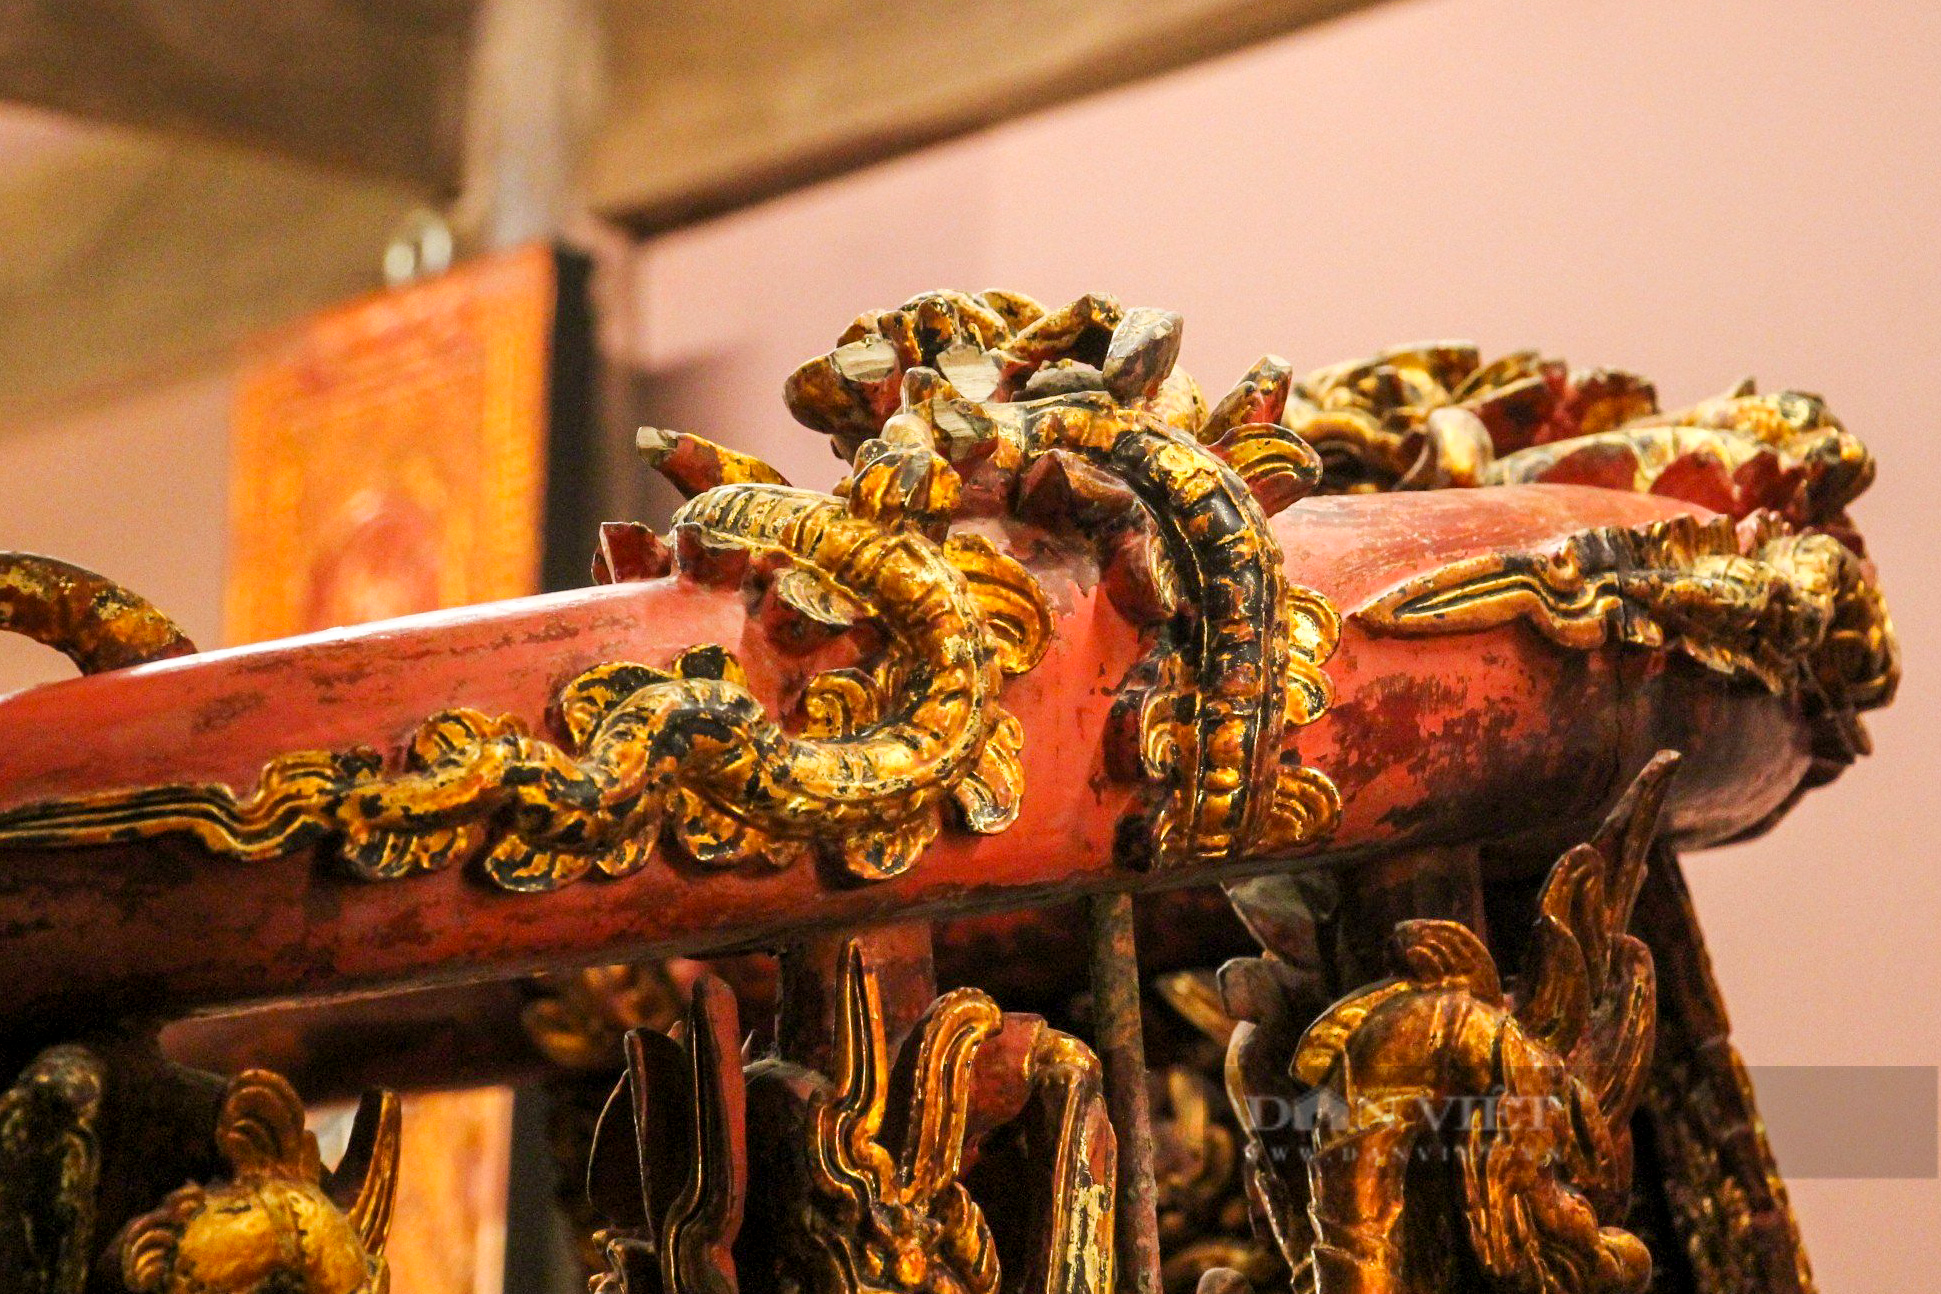 Ngai thờ sơn son thếp vàng 300 tuổi ở Thái Bình được công nhận là bảo vật quốc gia - Ảnh 9.